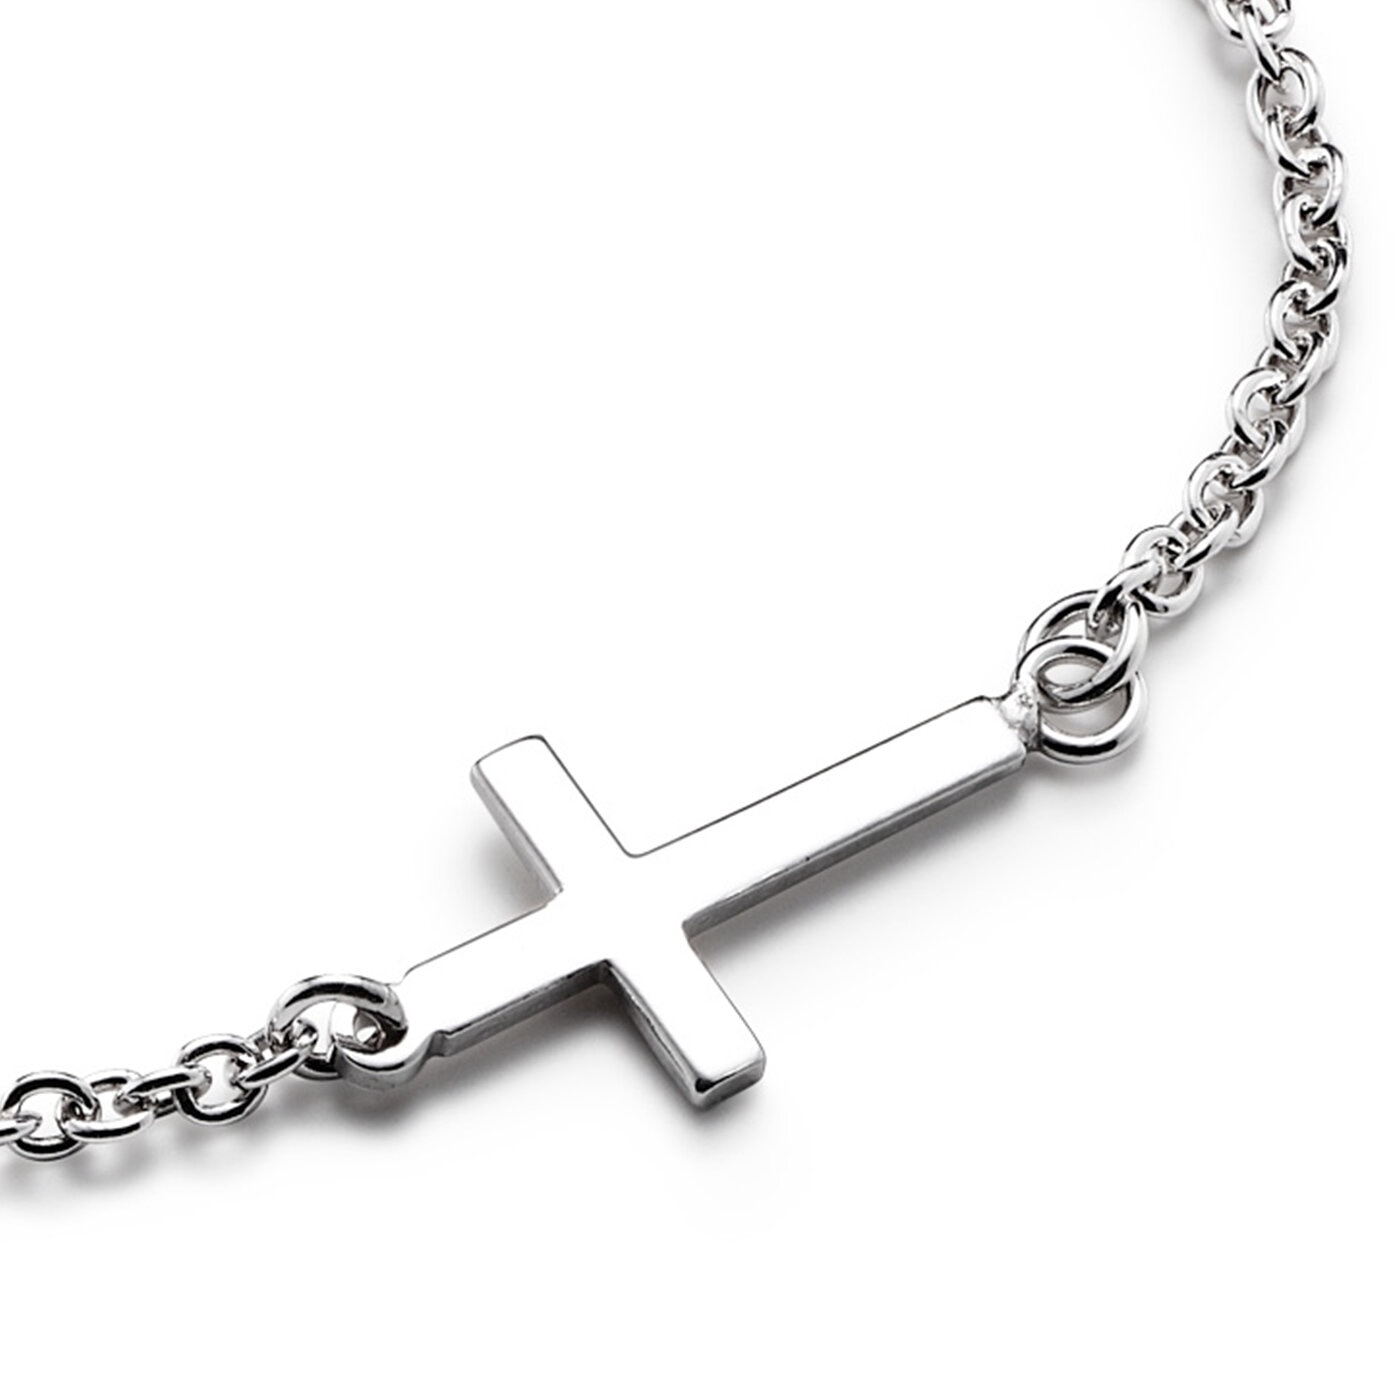 Faith bridge bracelet